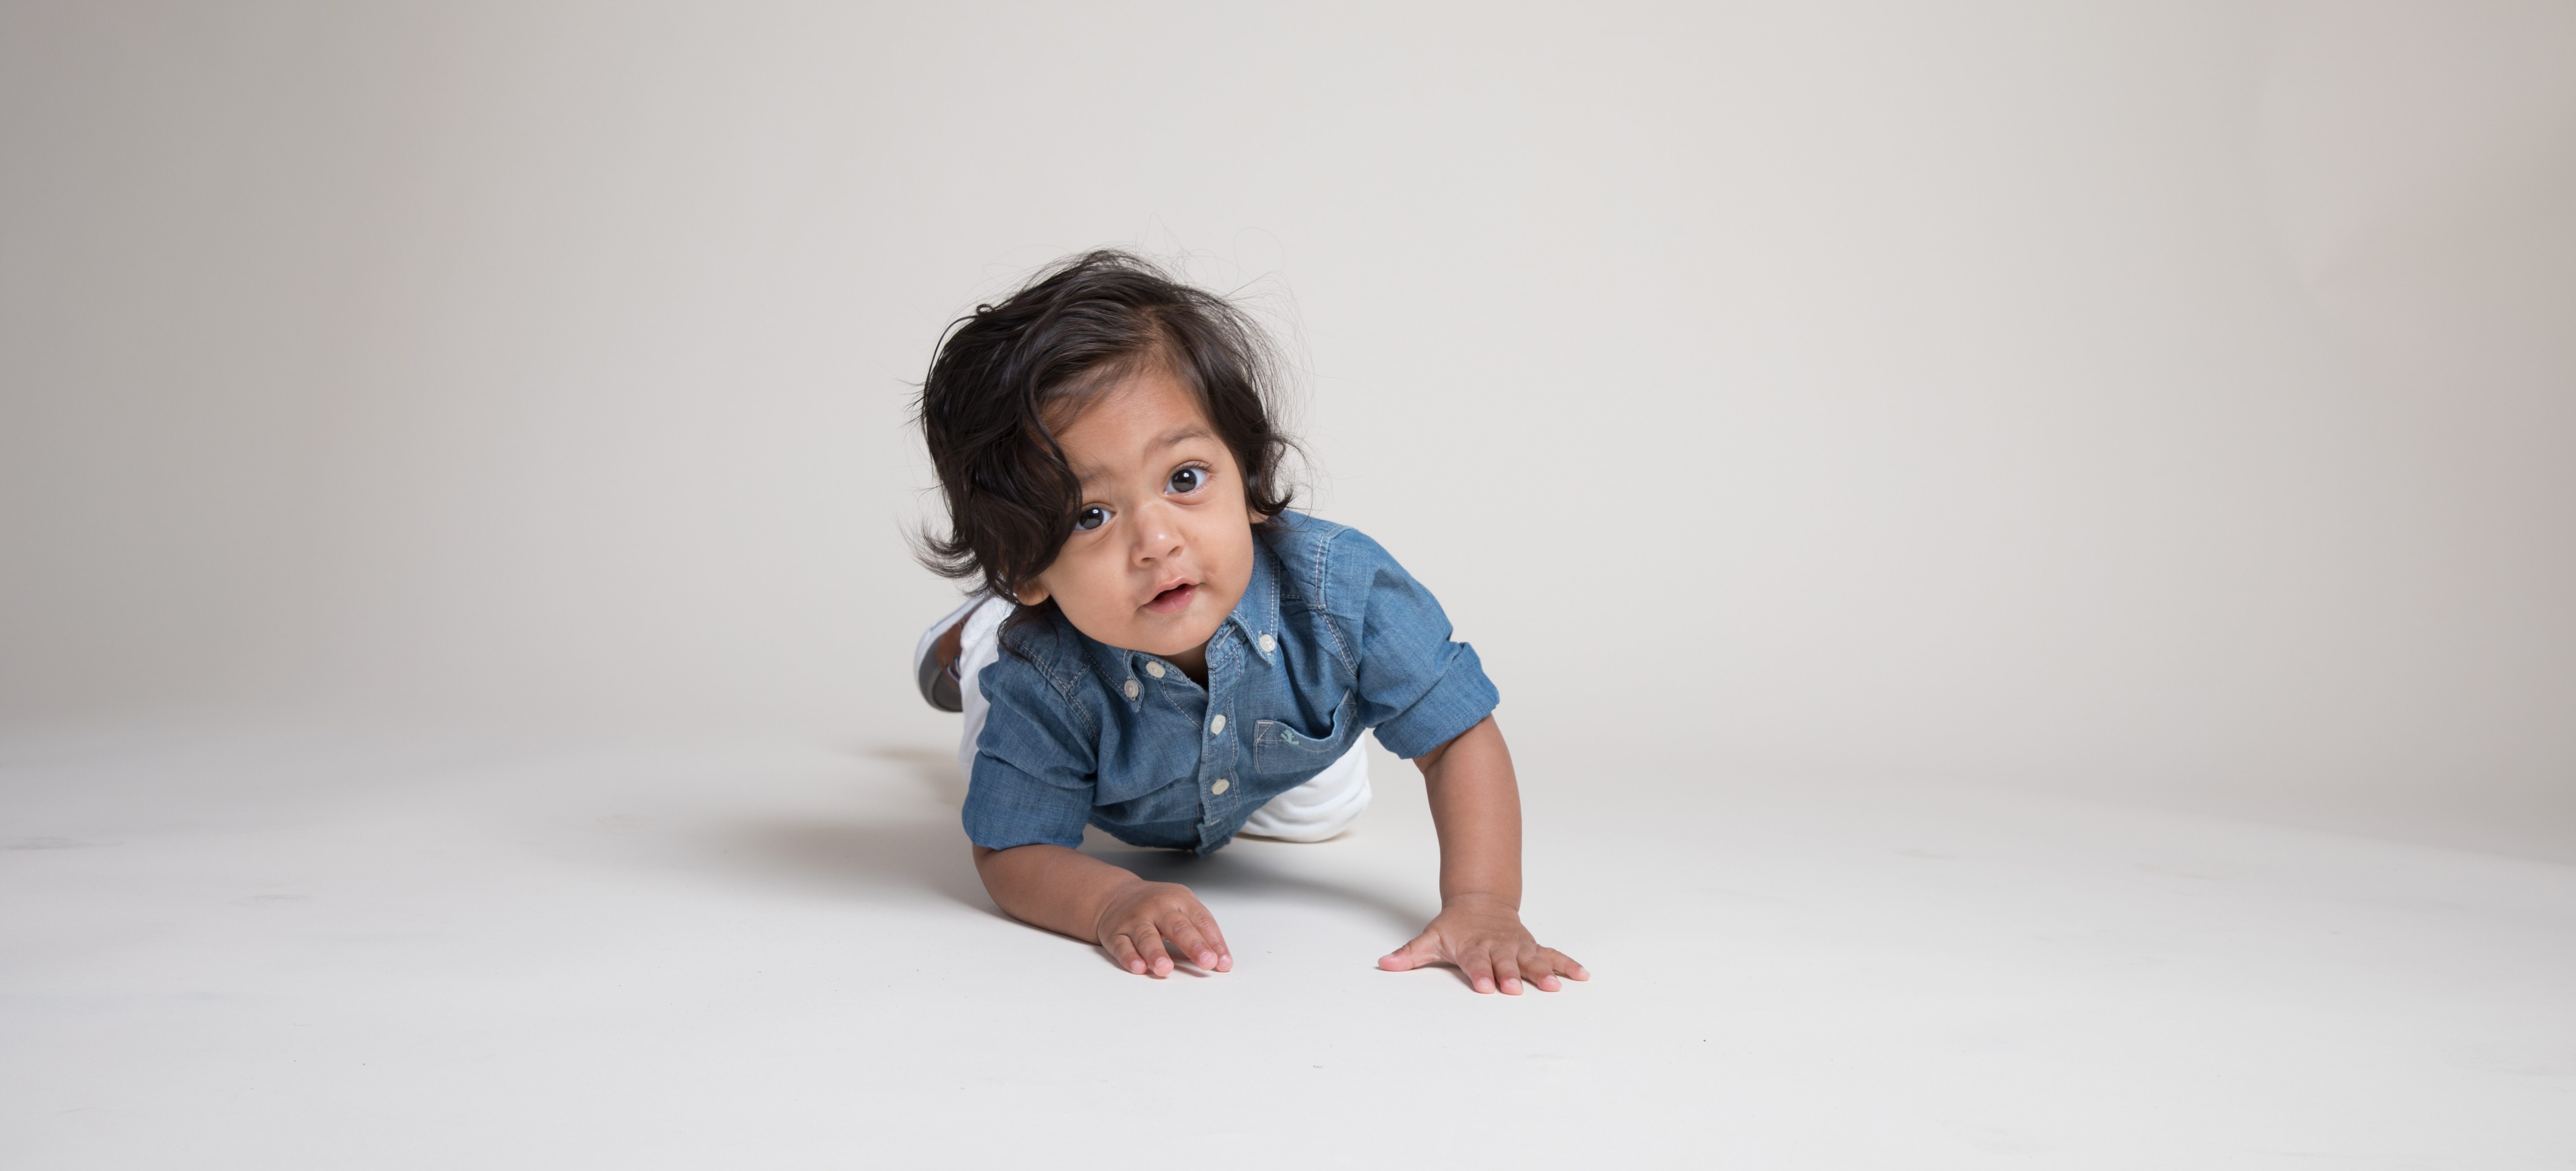 Ezra Balasundaram, 417 Magazine's Cutest Baby 2018 winner